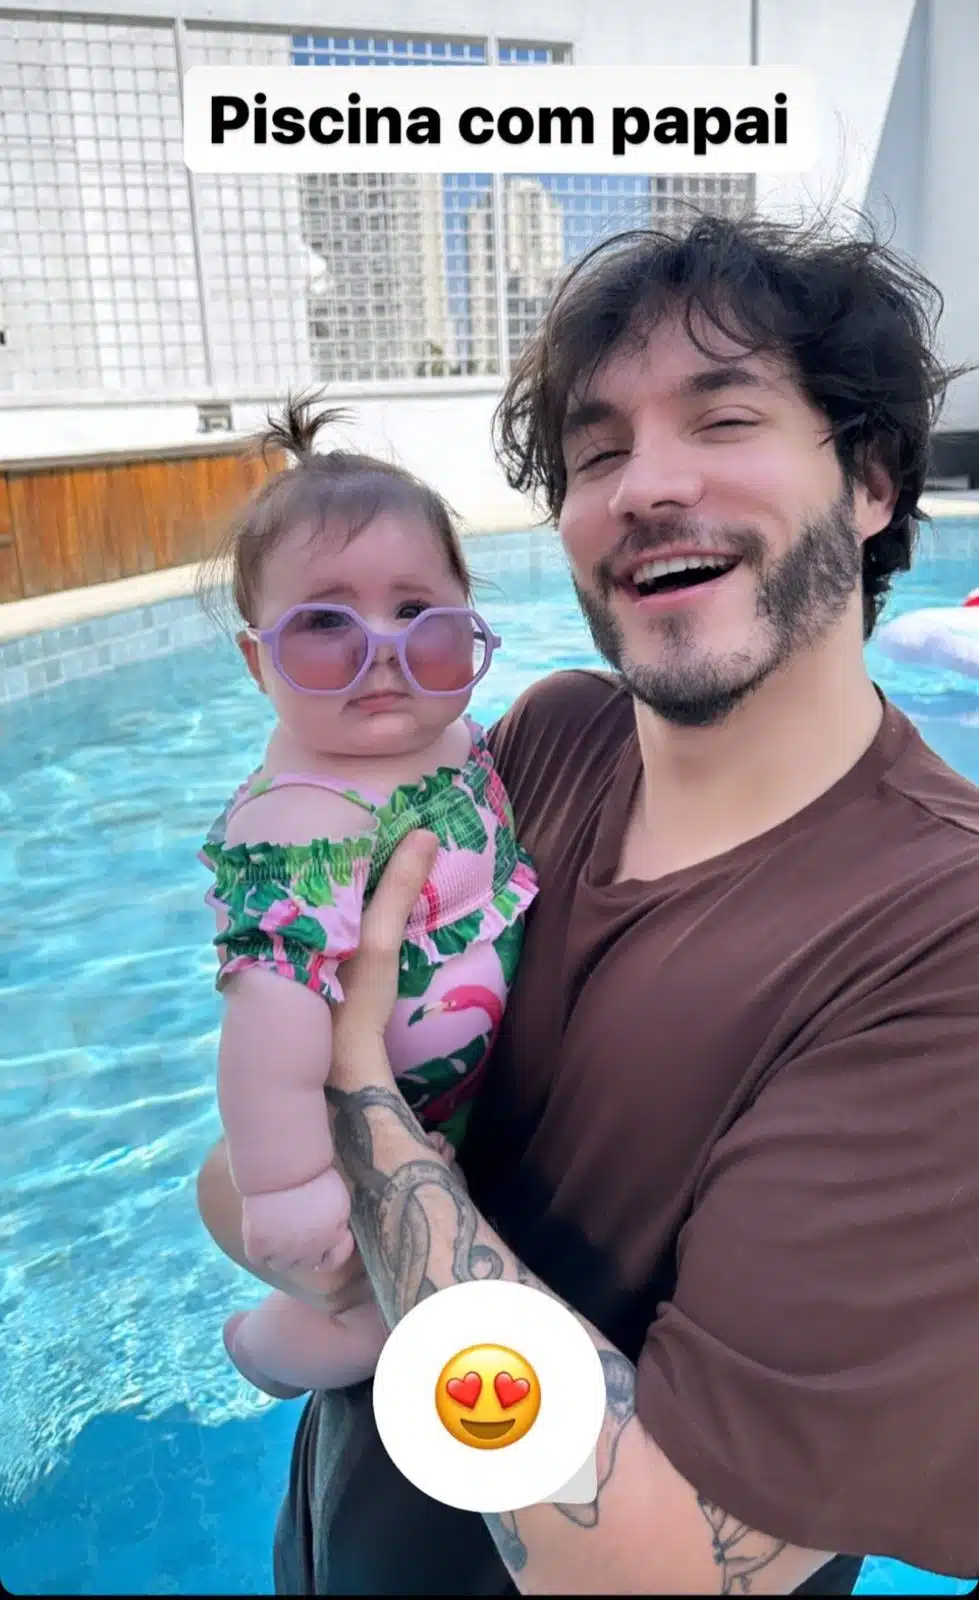 Eliezer posa com sua bebê na piscina